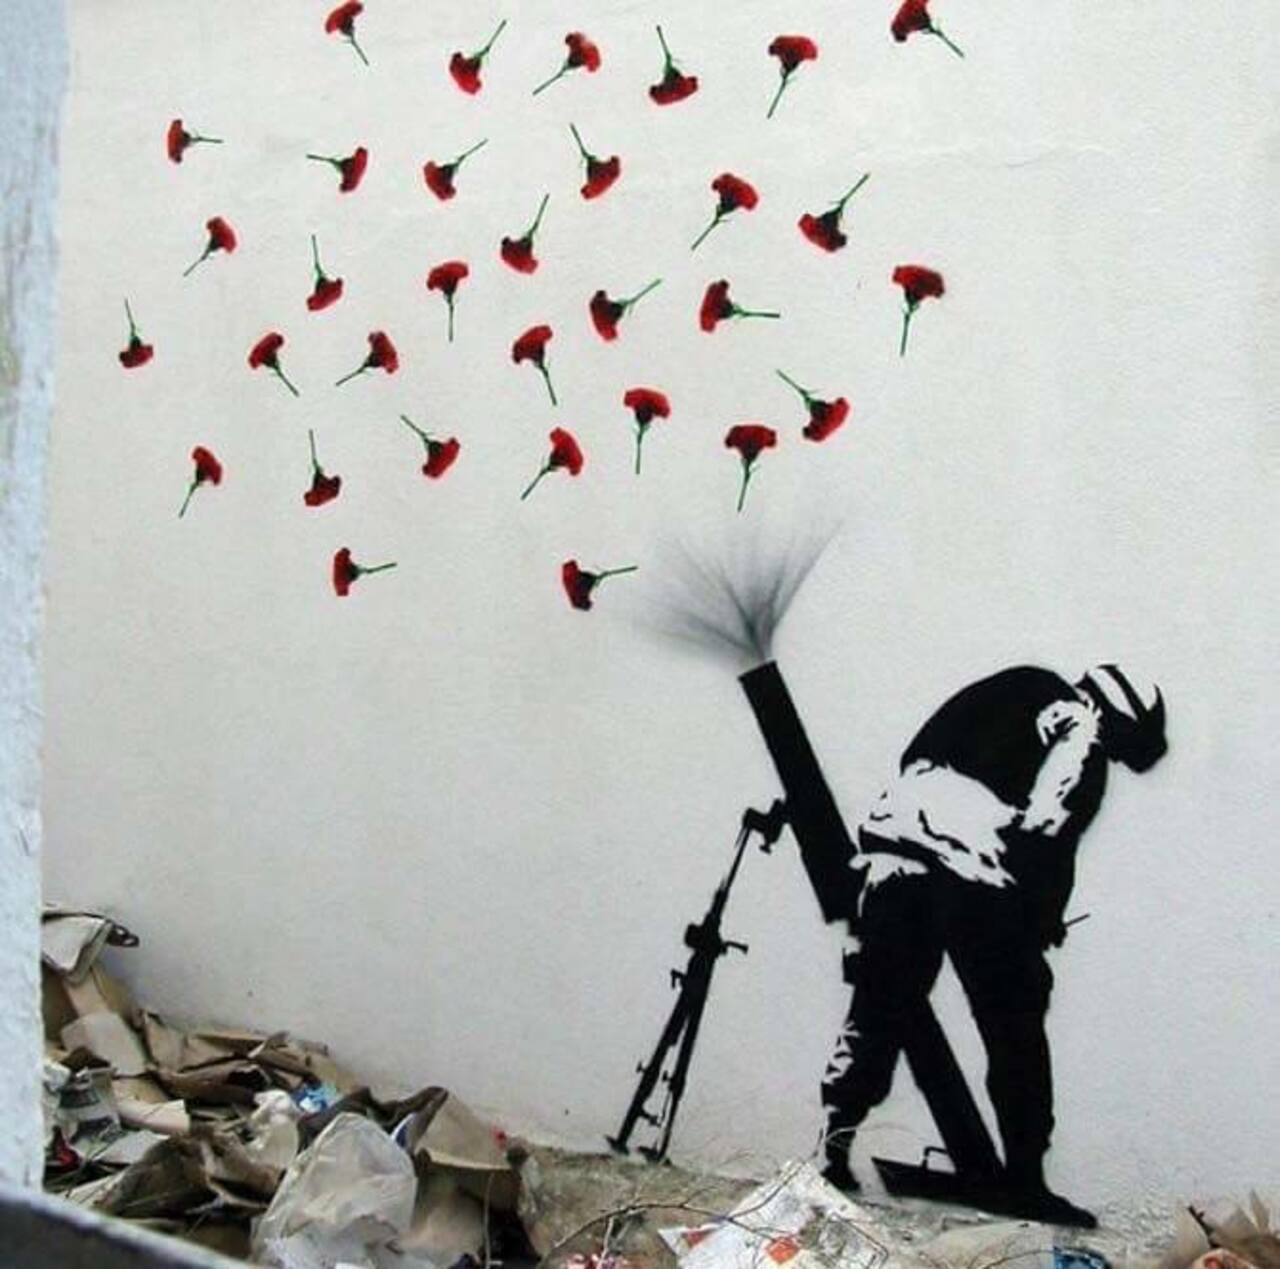 FLOWER BOMBS – #Creative #Streetart | Be ▲rtist - Be ▲rt https://beartistbeart.com/2016/08/17/flower-bombs-creative-streetart/?utm_campaign=crowdfire&utm_content=crowdfire&utm_medium=social&utm_source=twitter https://t.co/d2BKs0GHXA